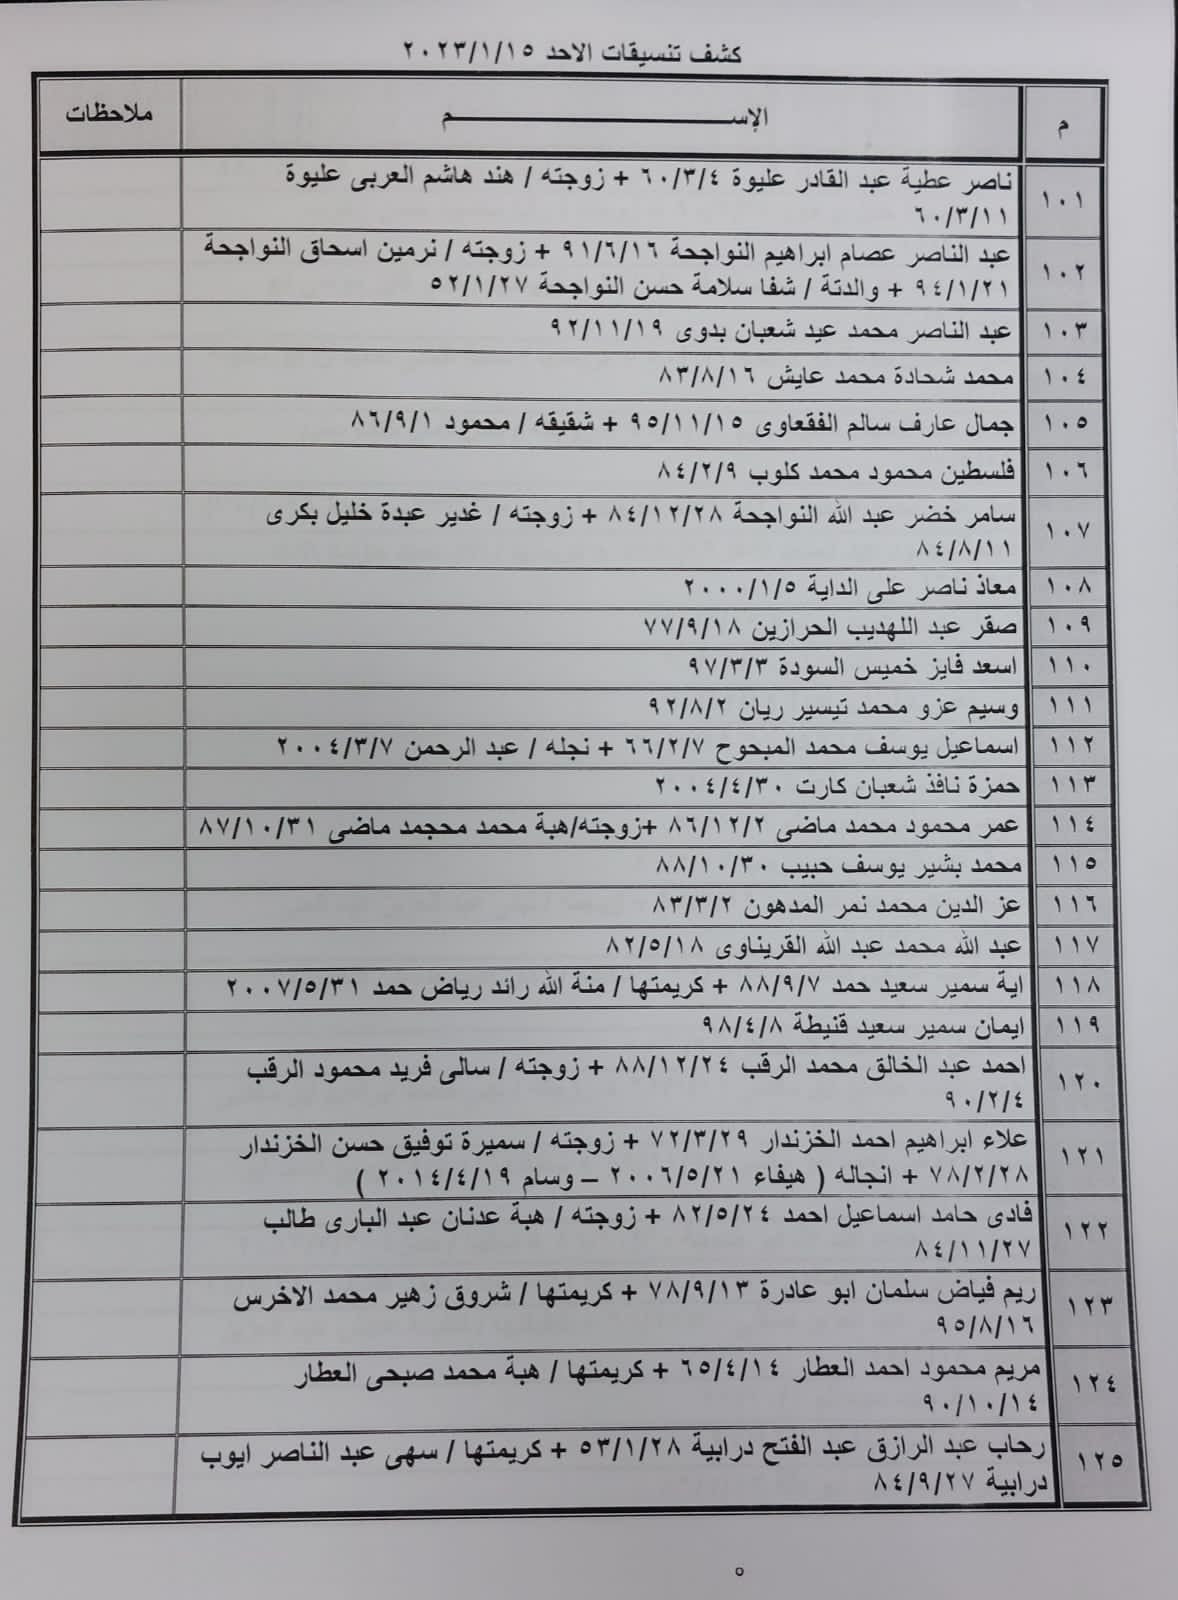 بالأسماء: كشف "التنسيقات المصرية" للسفر عبر معبر رفح الأحد 15 يناير 2023